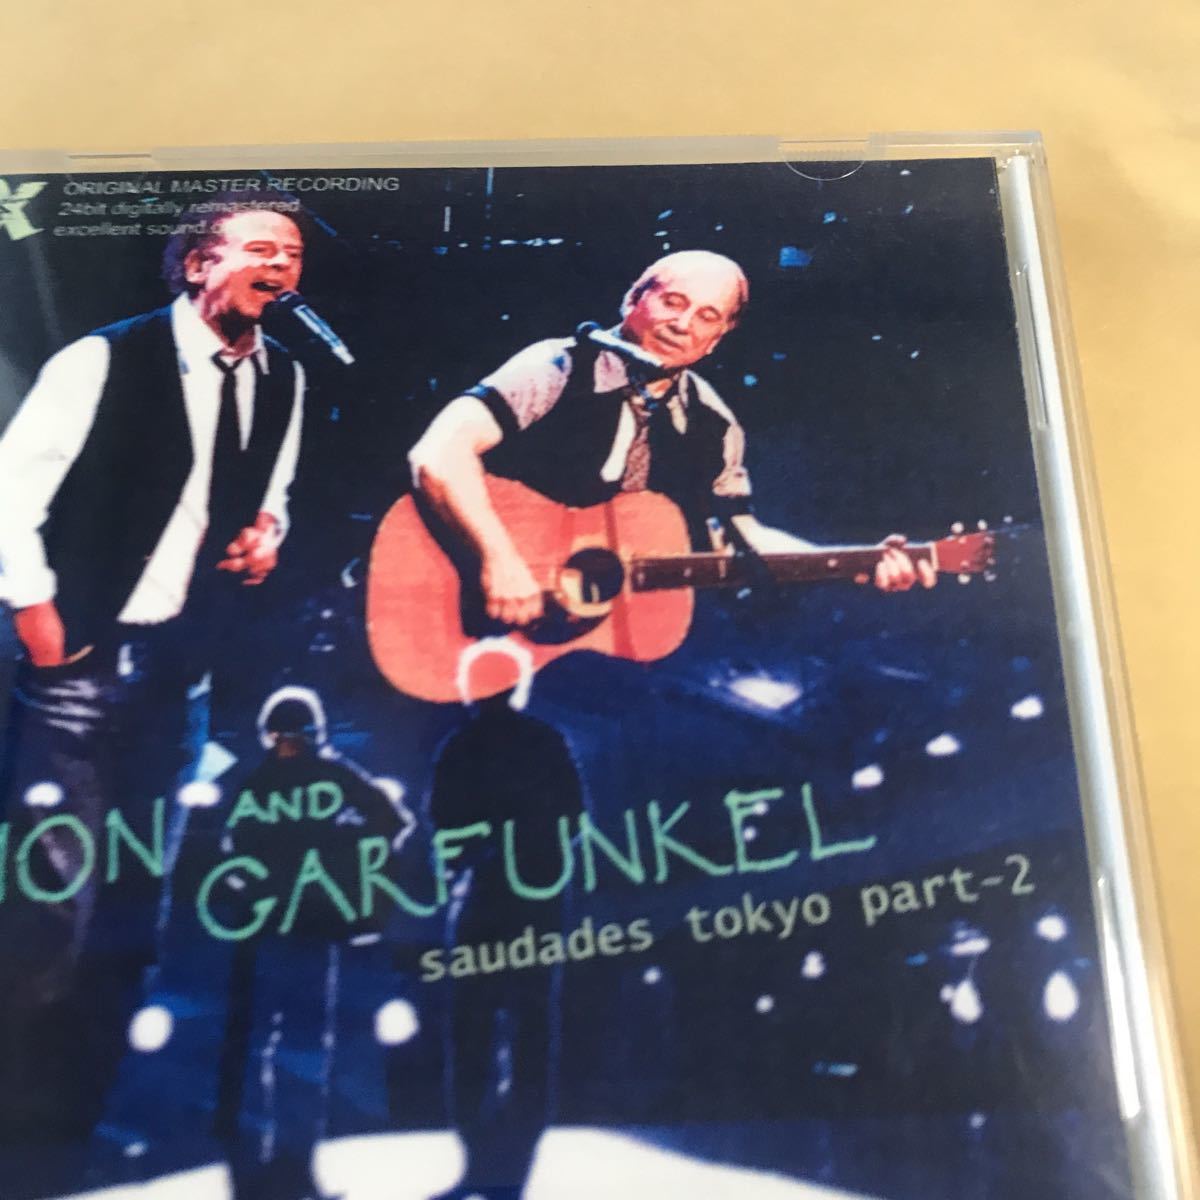  Simon &ga- вентилятор kru[2009 Tokyo Dome LIVE 2CD] private CD прекрасный товар CDHYR[ стоимость доставки модифицировано .] прослушивание - раз 